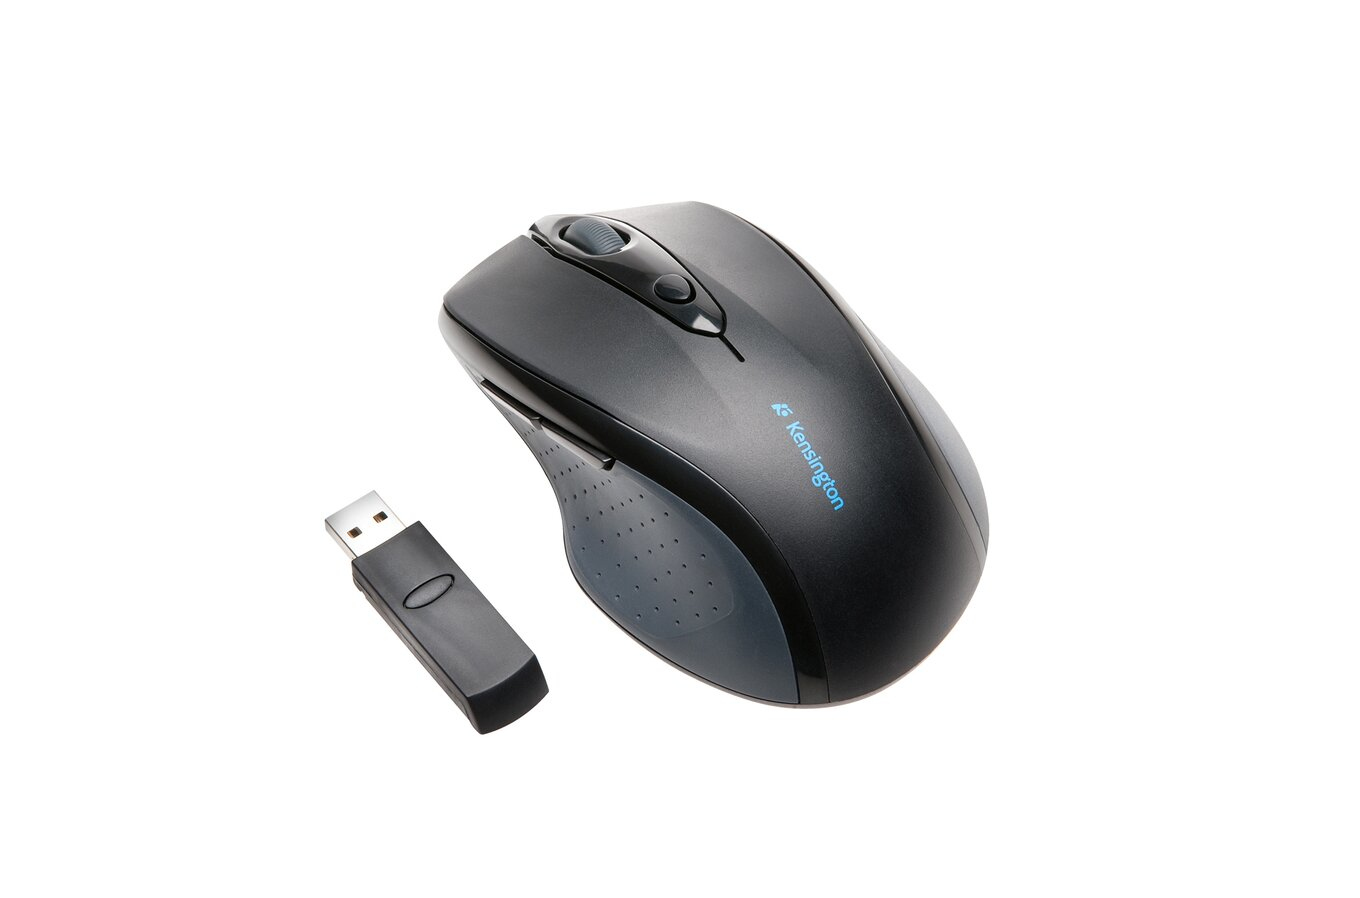 Kensington Pro Fit Wireless Full-Size Mouse Black K72370EU